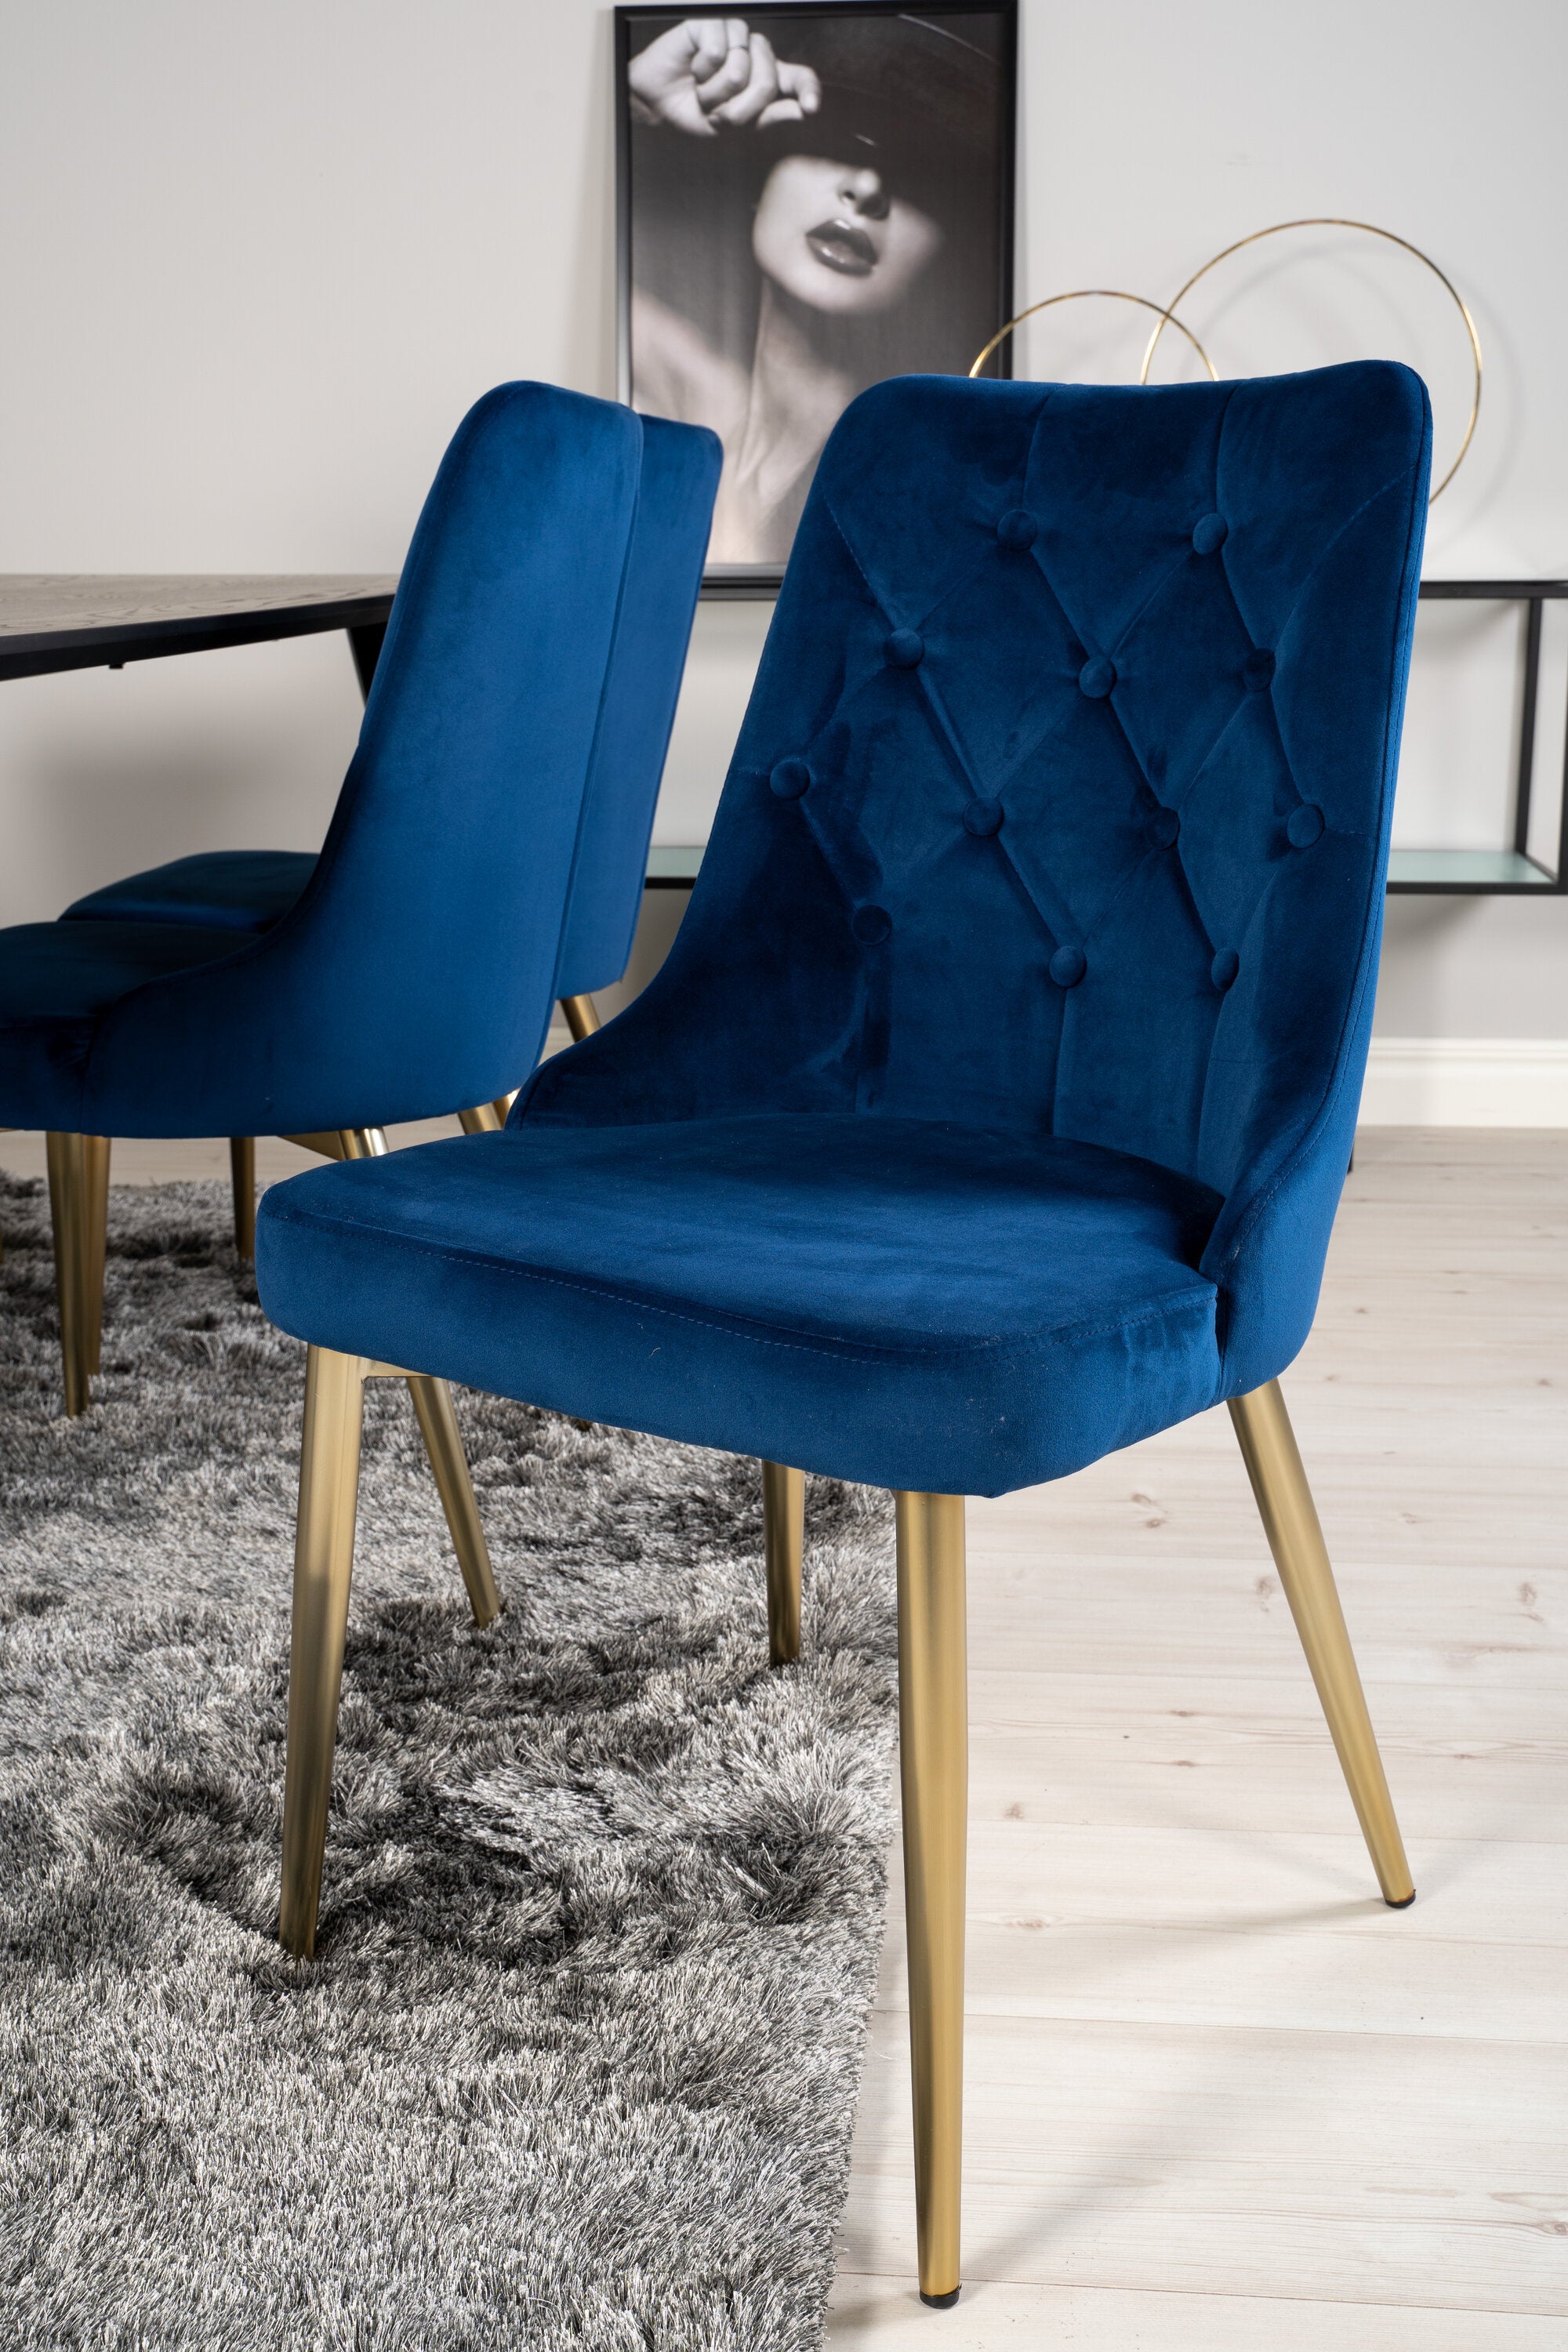 Dipp Esszimmerset + Velvet Deluxe 180cm/6St. in Blau / Gold präsentiert im Onlineshop von KAQTU Design AG. Esszimmerset ist von Venture Home